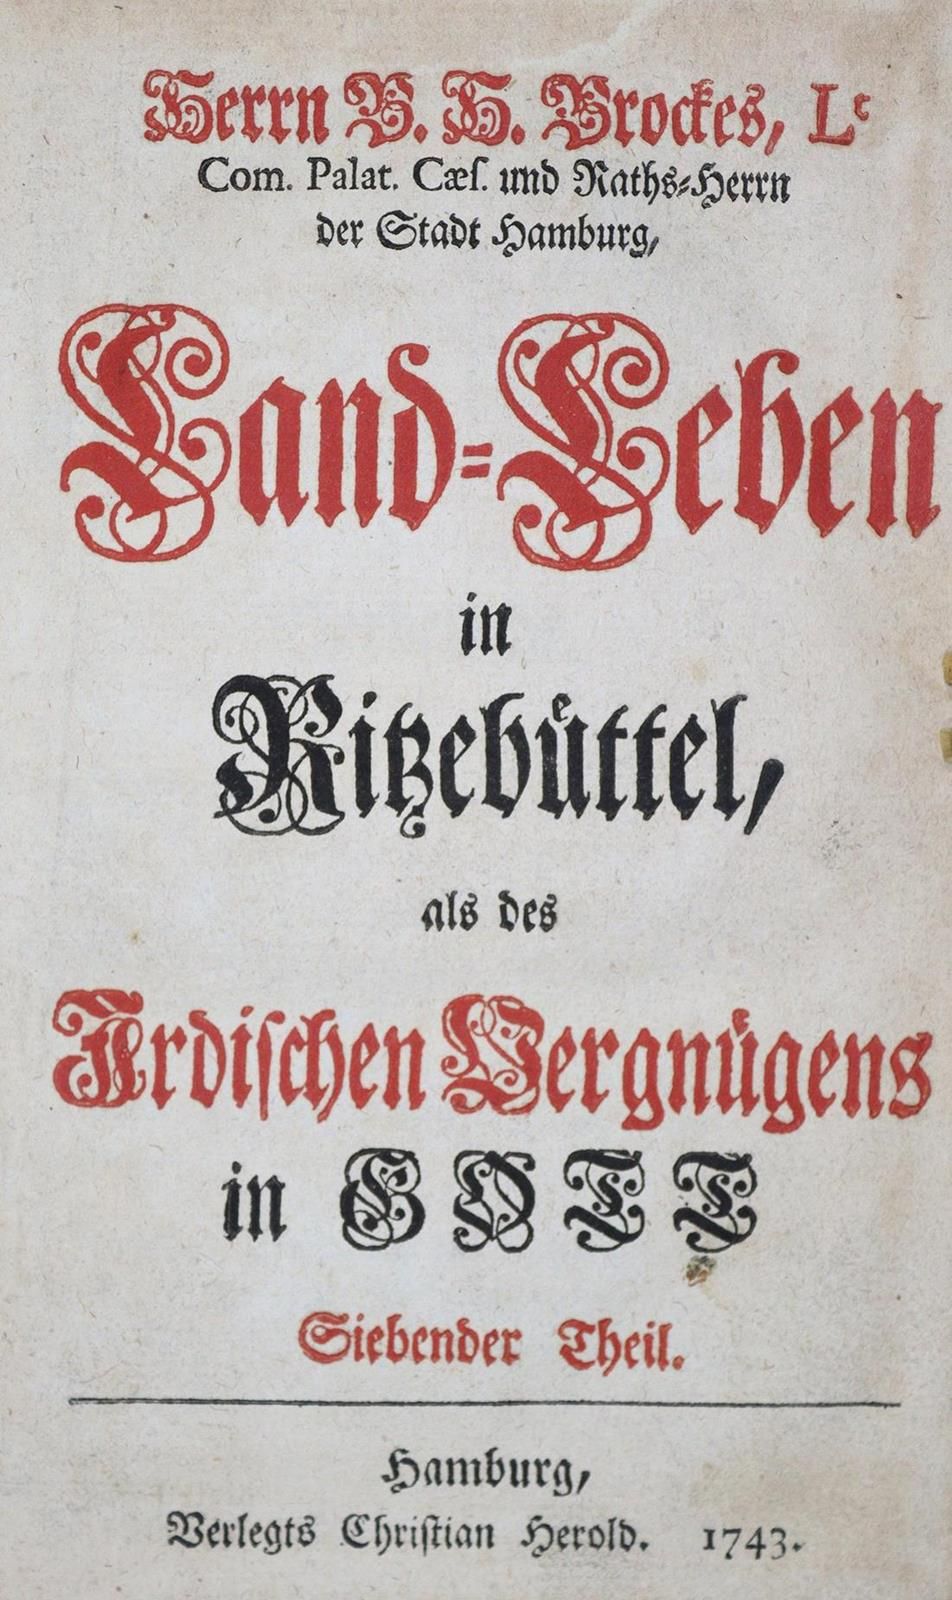 Brockes,B.H. Land-Leben in Ritzebüttel, als dies irdischen Vergnügens in Gott. S&hellip;